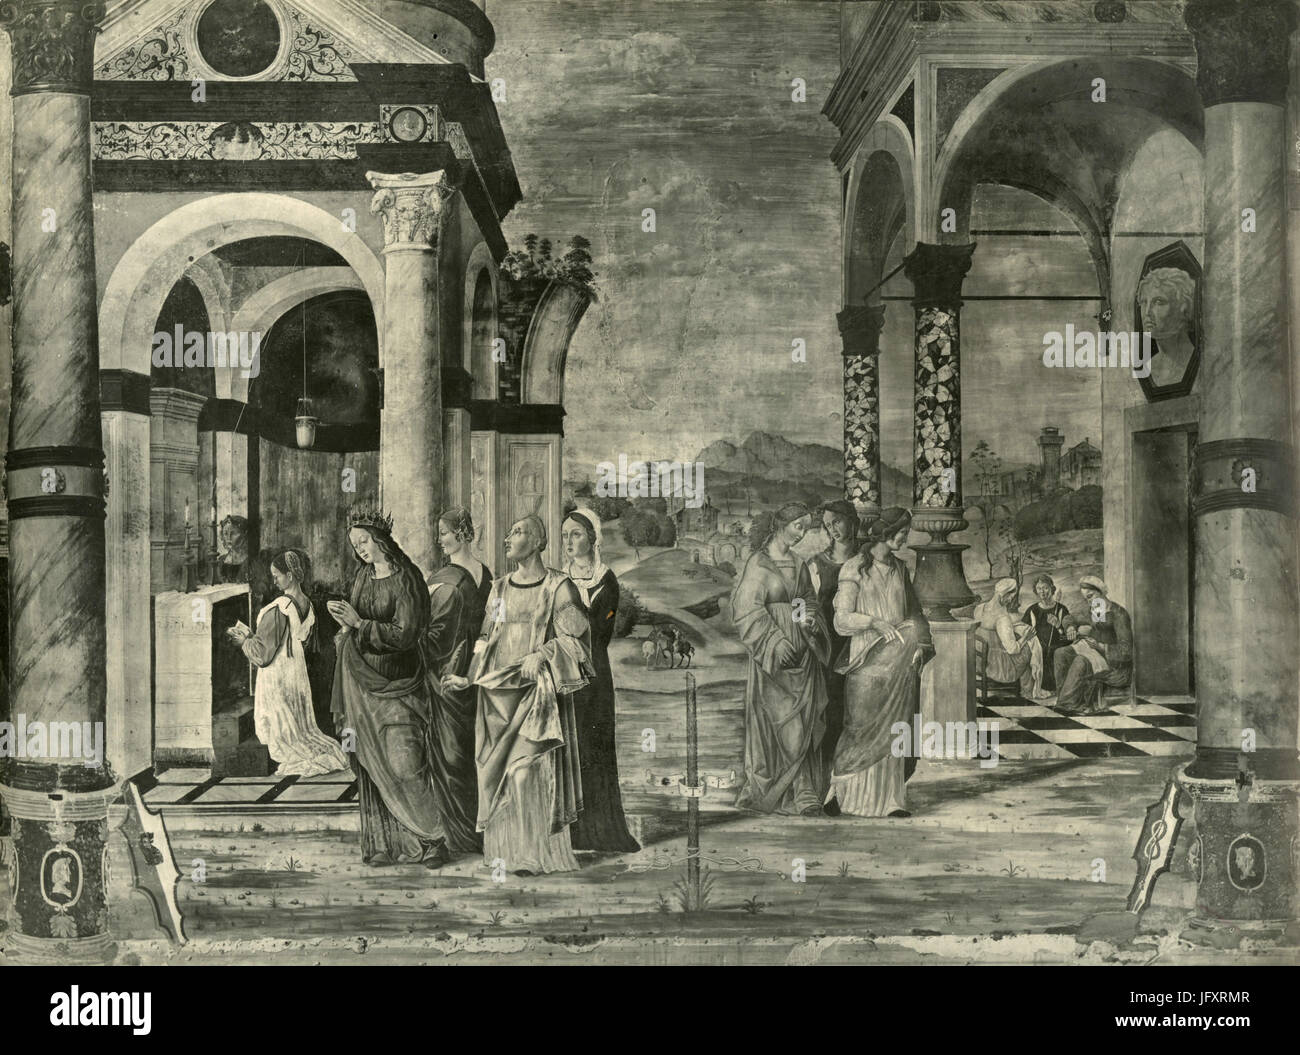 Reinigung der Jungfrau Maria, Gemälde von Girolamo da Santa Croce, Padua, Italien Stockfoto